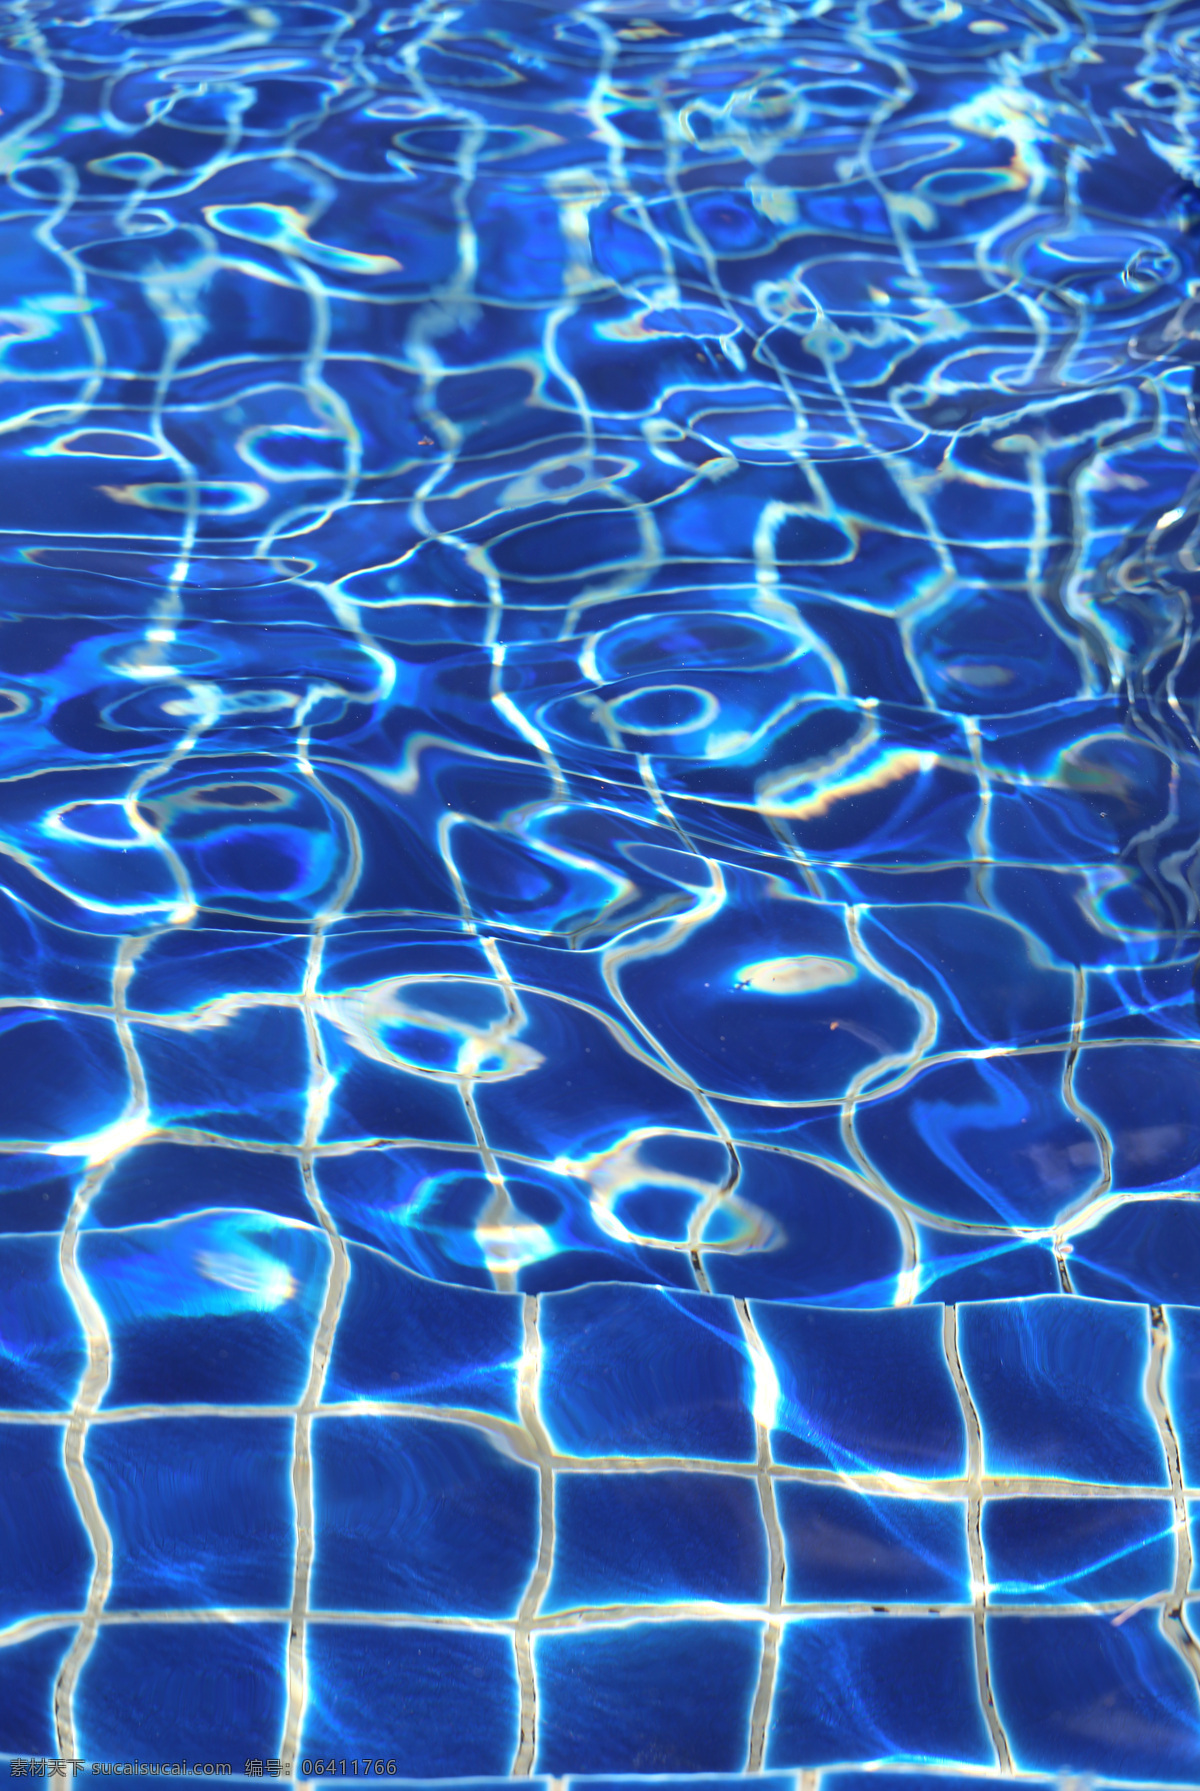 蓝色 泳池 水面 背景 水波 波纹 水图片 生活百科